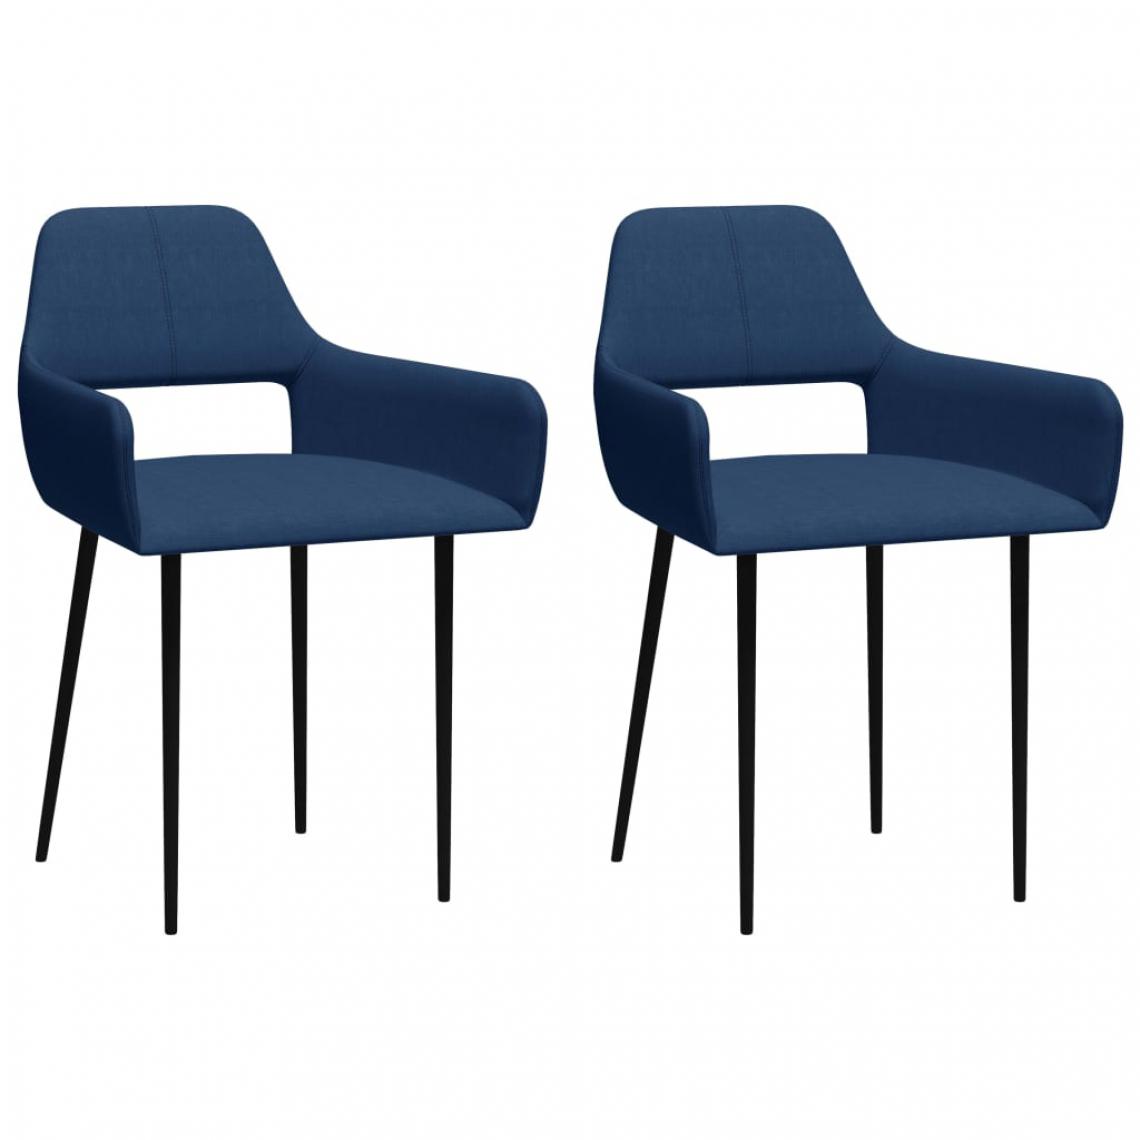 Icaverne - Magnifique Fauteuils et chaises reference Kingstown Chaises de salle à manger 2 pcs Bleu Tissu - Chaises